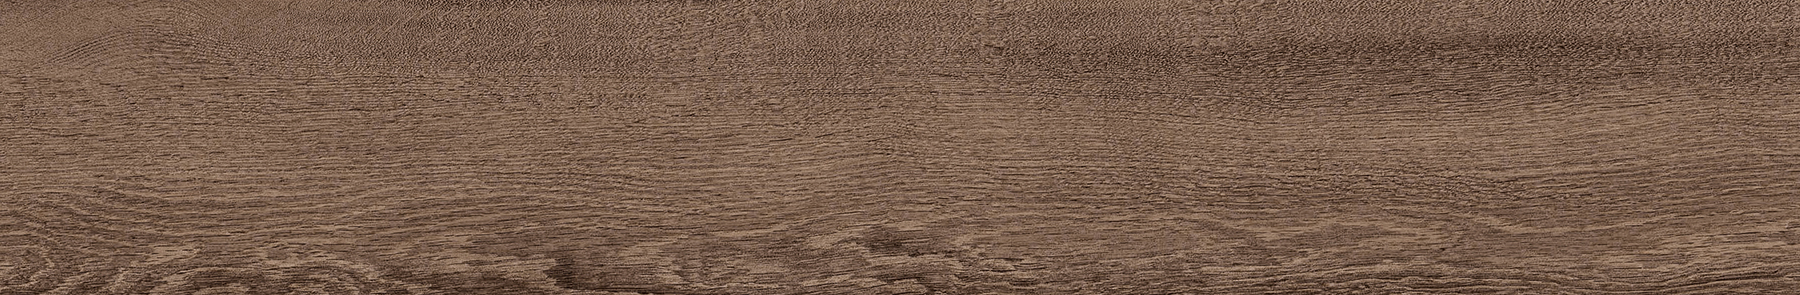 EW1091-15 川島織物セルコン 床タイル エグザウッド ティンテッドオーク 川島織物セルコン フロアタイル